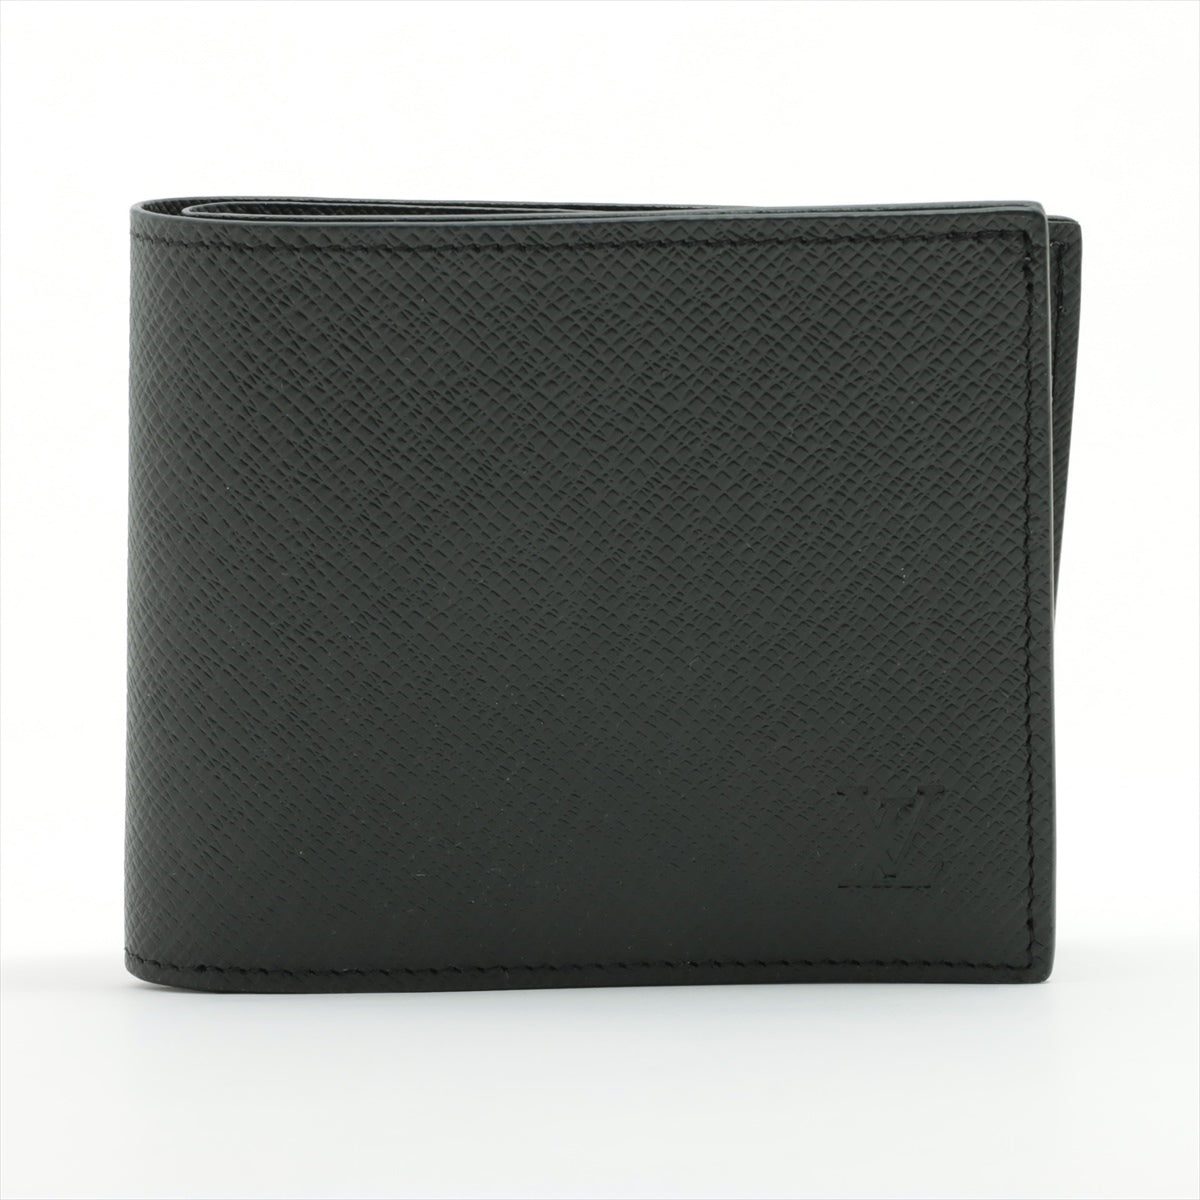 ルイヴィトン タイガ ポルトフォイユ･マルコNM M62289 ブラック 財布